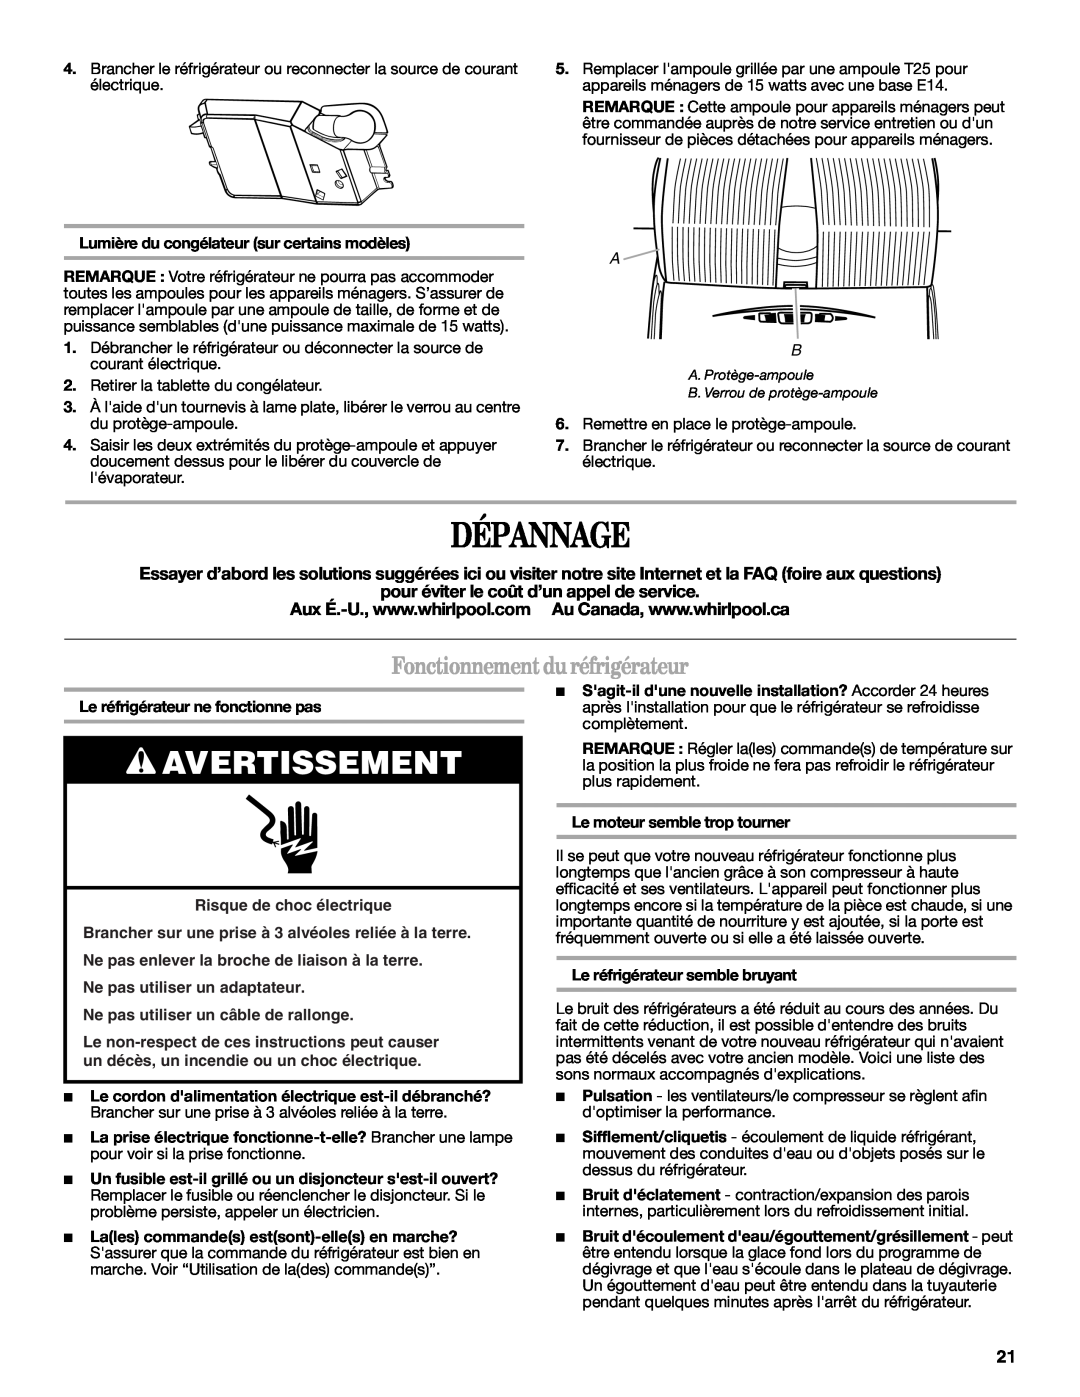 Whirlpool W10217604A installation instructions Dépannage, Fonctionnement du réfrigérateur, Avertissement 